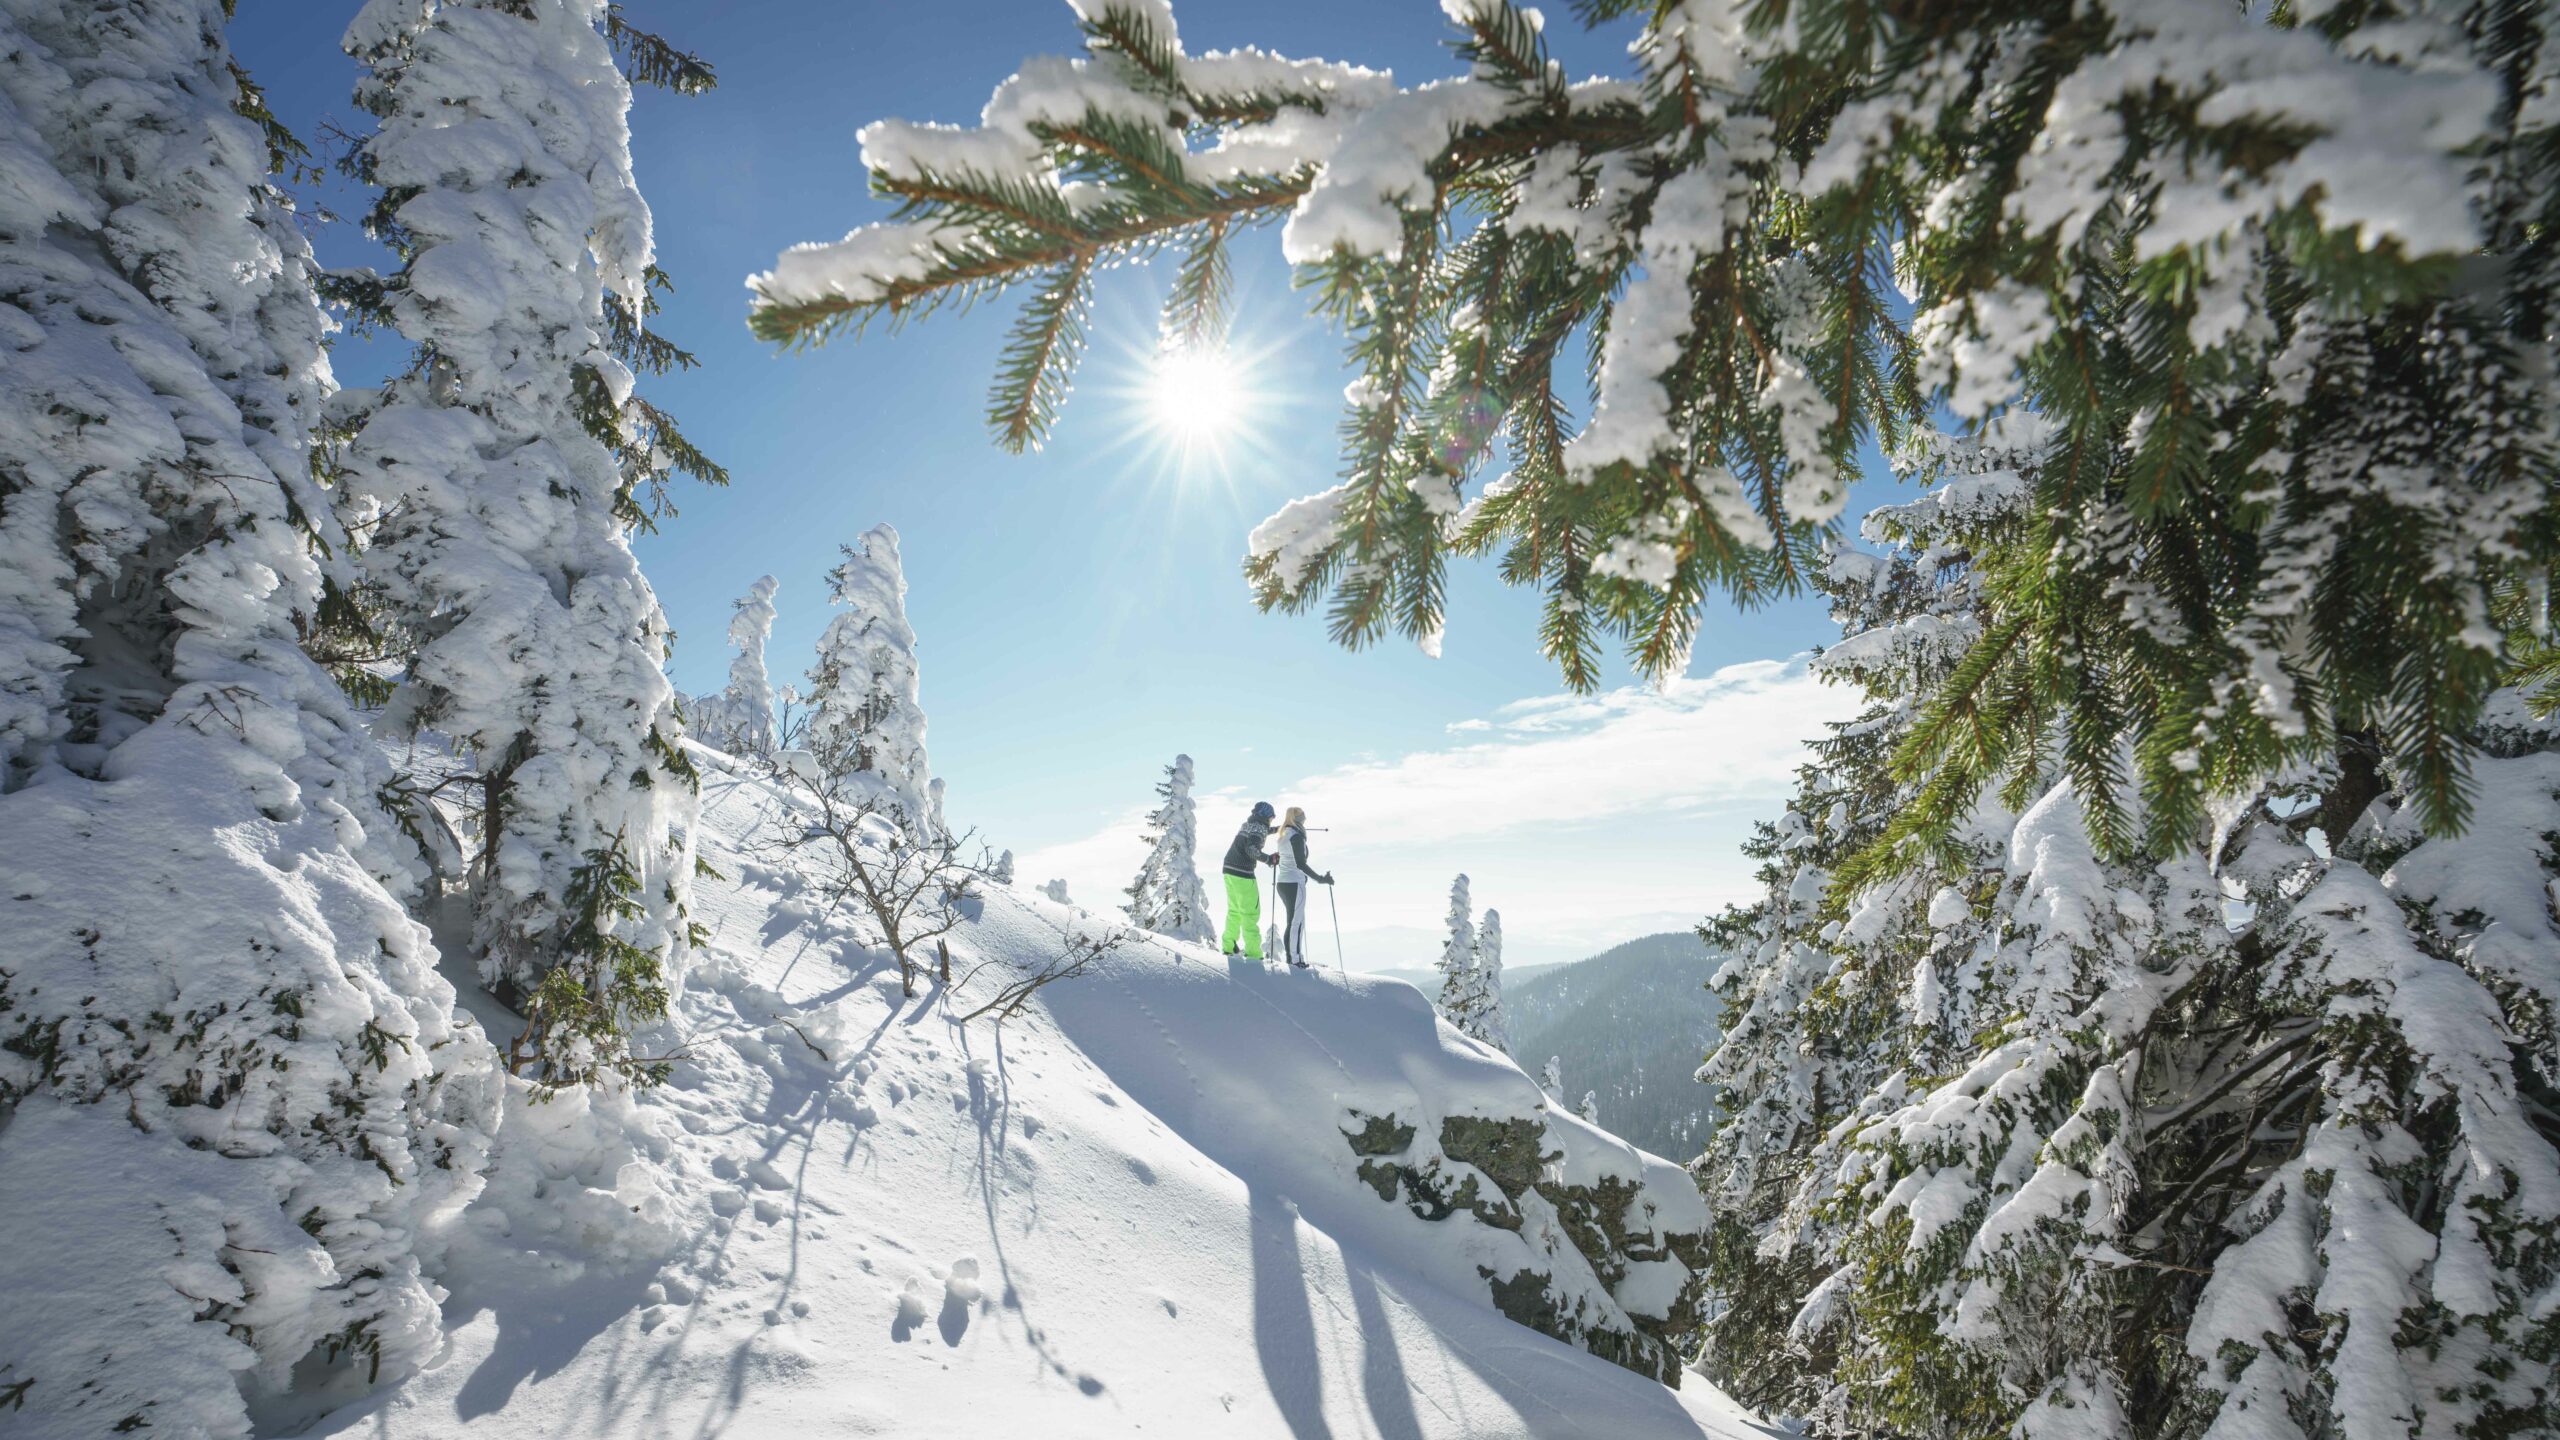 Sneeuwschoen wandeling in winterwonderland Beierse wout met bomen een ook veel zon